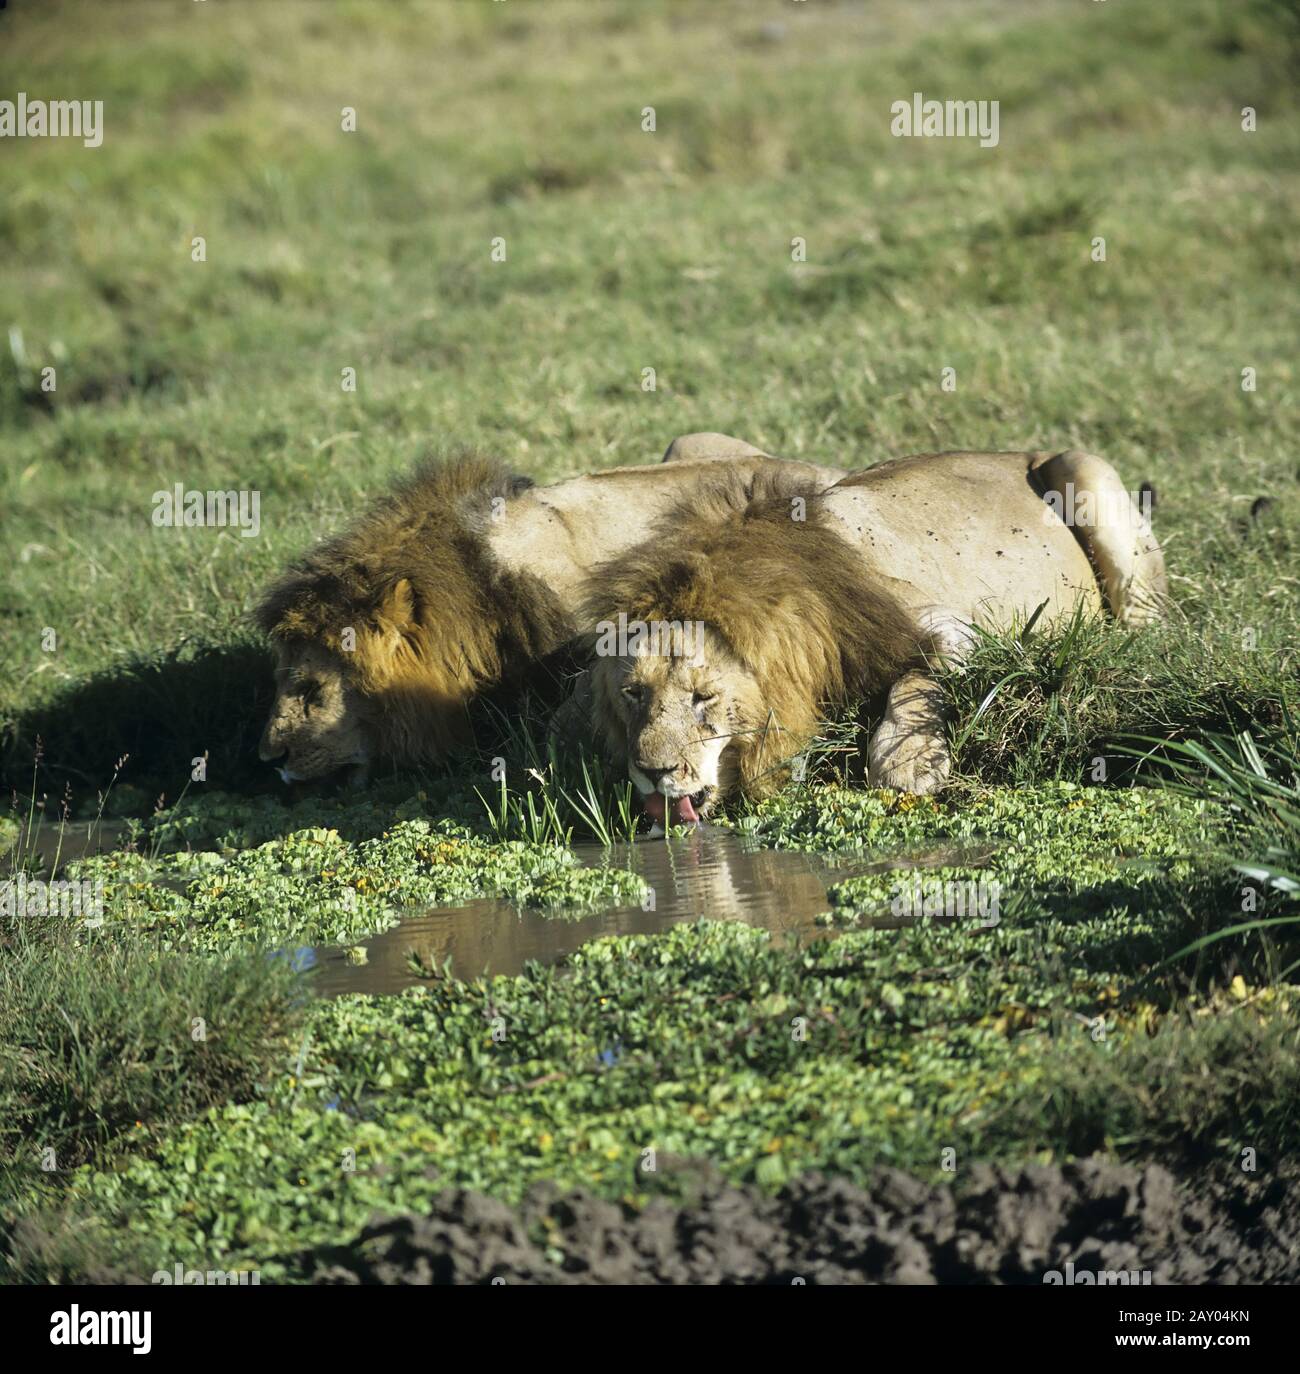 Loewe, Maennchen, am Wasserloch, Panthera leo, lion, male, billabong Stock Photo